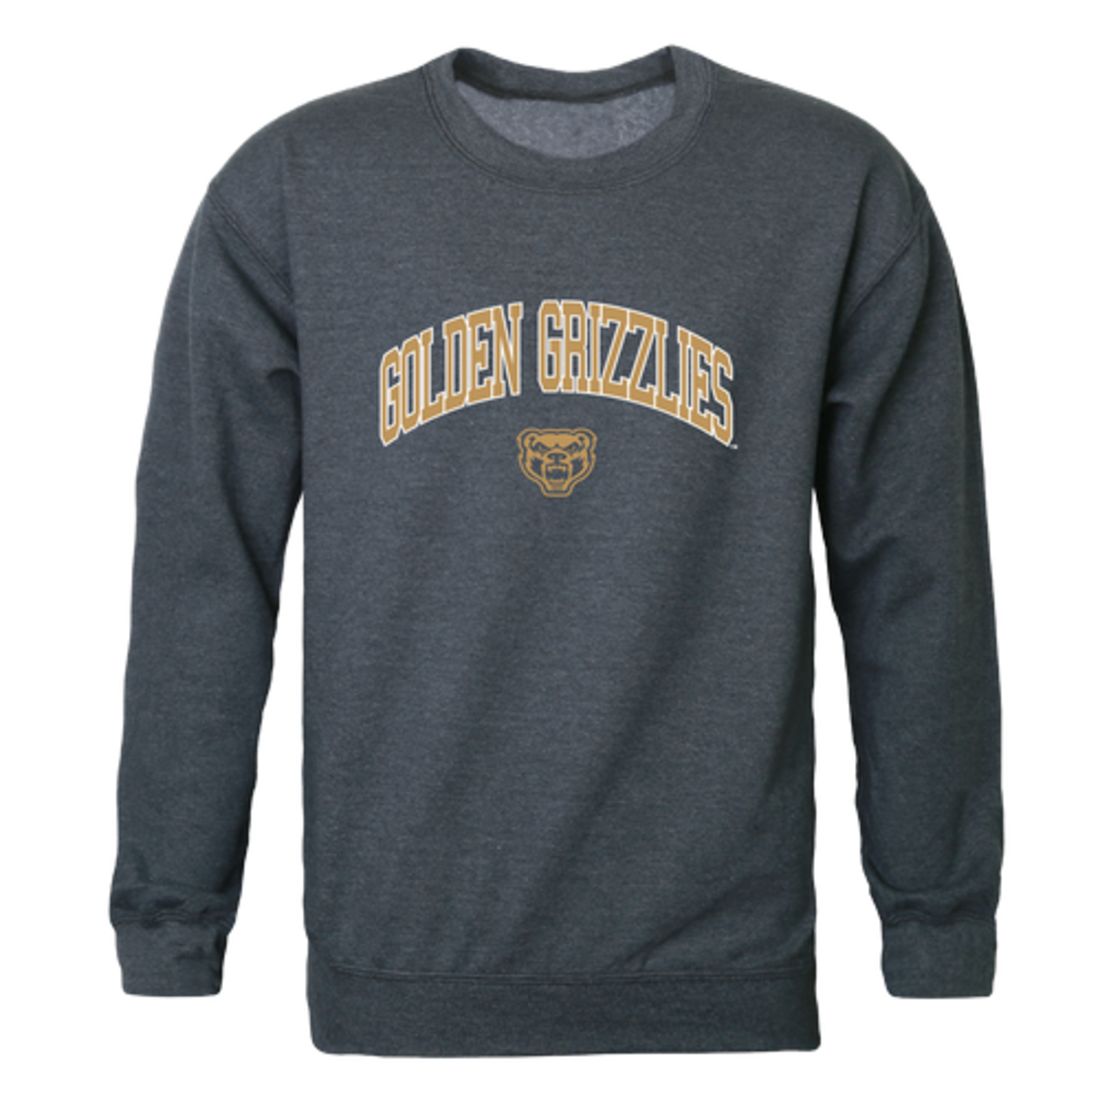 Oakland Golden Grizzlies Campus Crewneck Sweatshirt